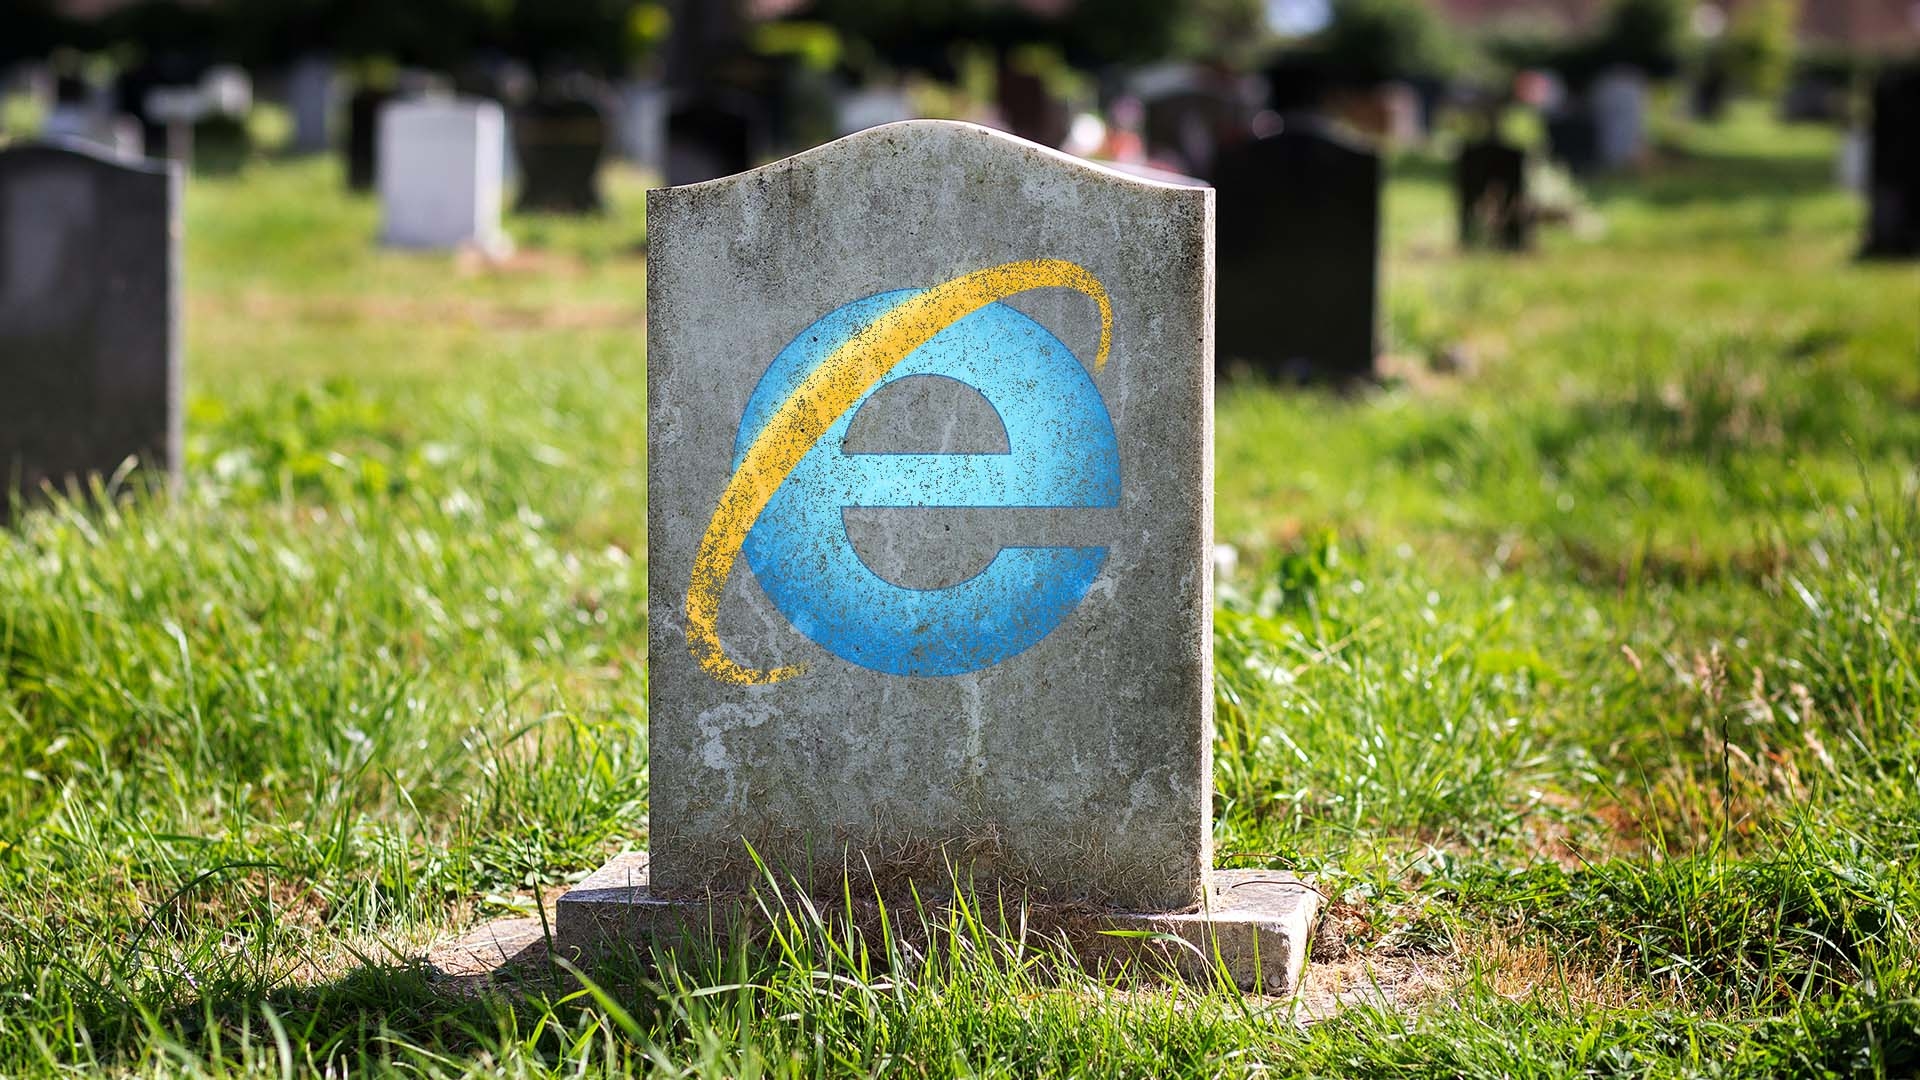 W tym artykule omówimy datę wygaśnięcia Internet Explorera, ponieważ 27-letnia przeglądarka przechodzi na emeryturę i odchodzi w przeszłość.